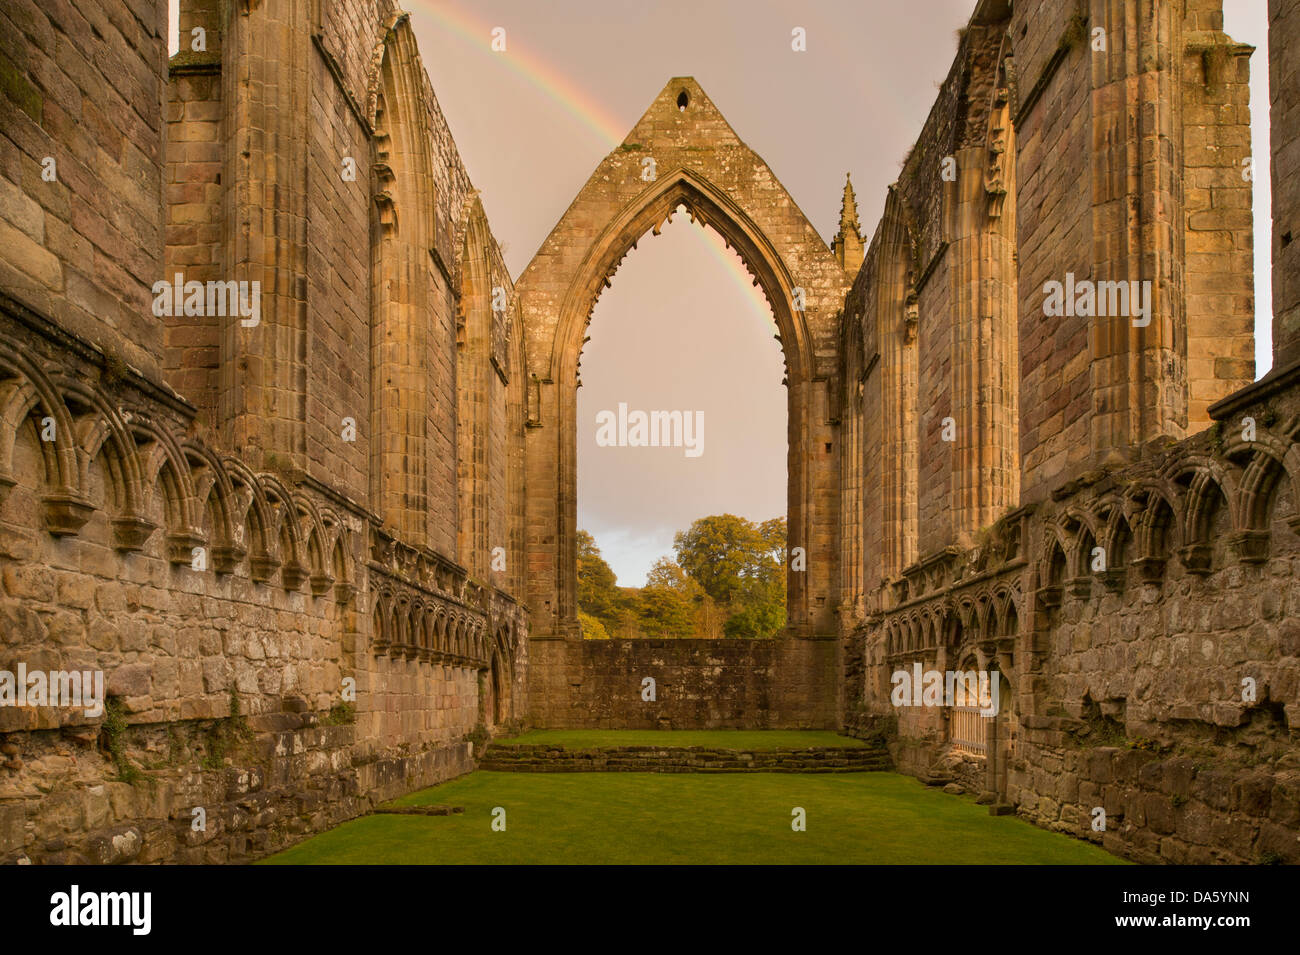 Vue de la lumière du soleil, l'ancienne et pittoresque de ruines monastiques avec Bolton Abbey en arc-en-ciel sombre au-dessus du chœur est fenêtre - Vallées du Yorkshire, England, UK. Banque D'Images